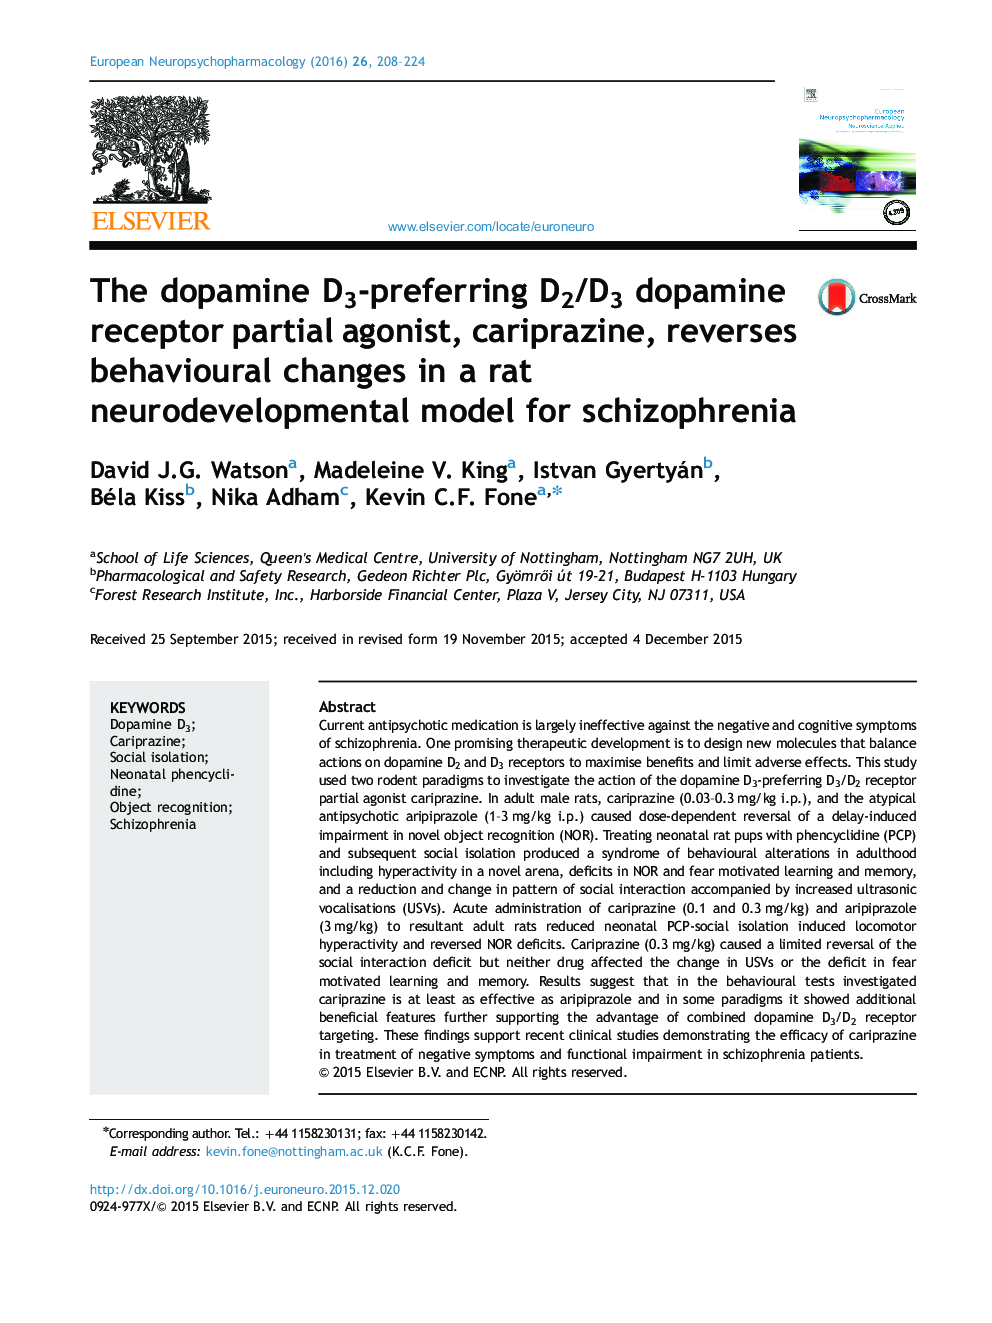 دوپامین آگونیست جزئی گیرنده دوپامین D2/D3، D3 ترجیحی، cariprazine ، تغییرات رفتاری در یک مدل تکاملی موش برای اسکیزوفرنی را معکوس می کند